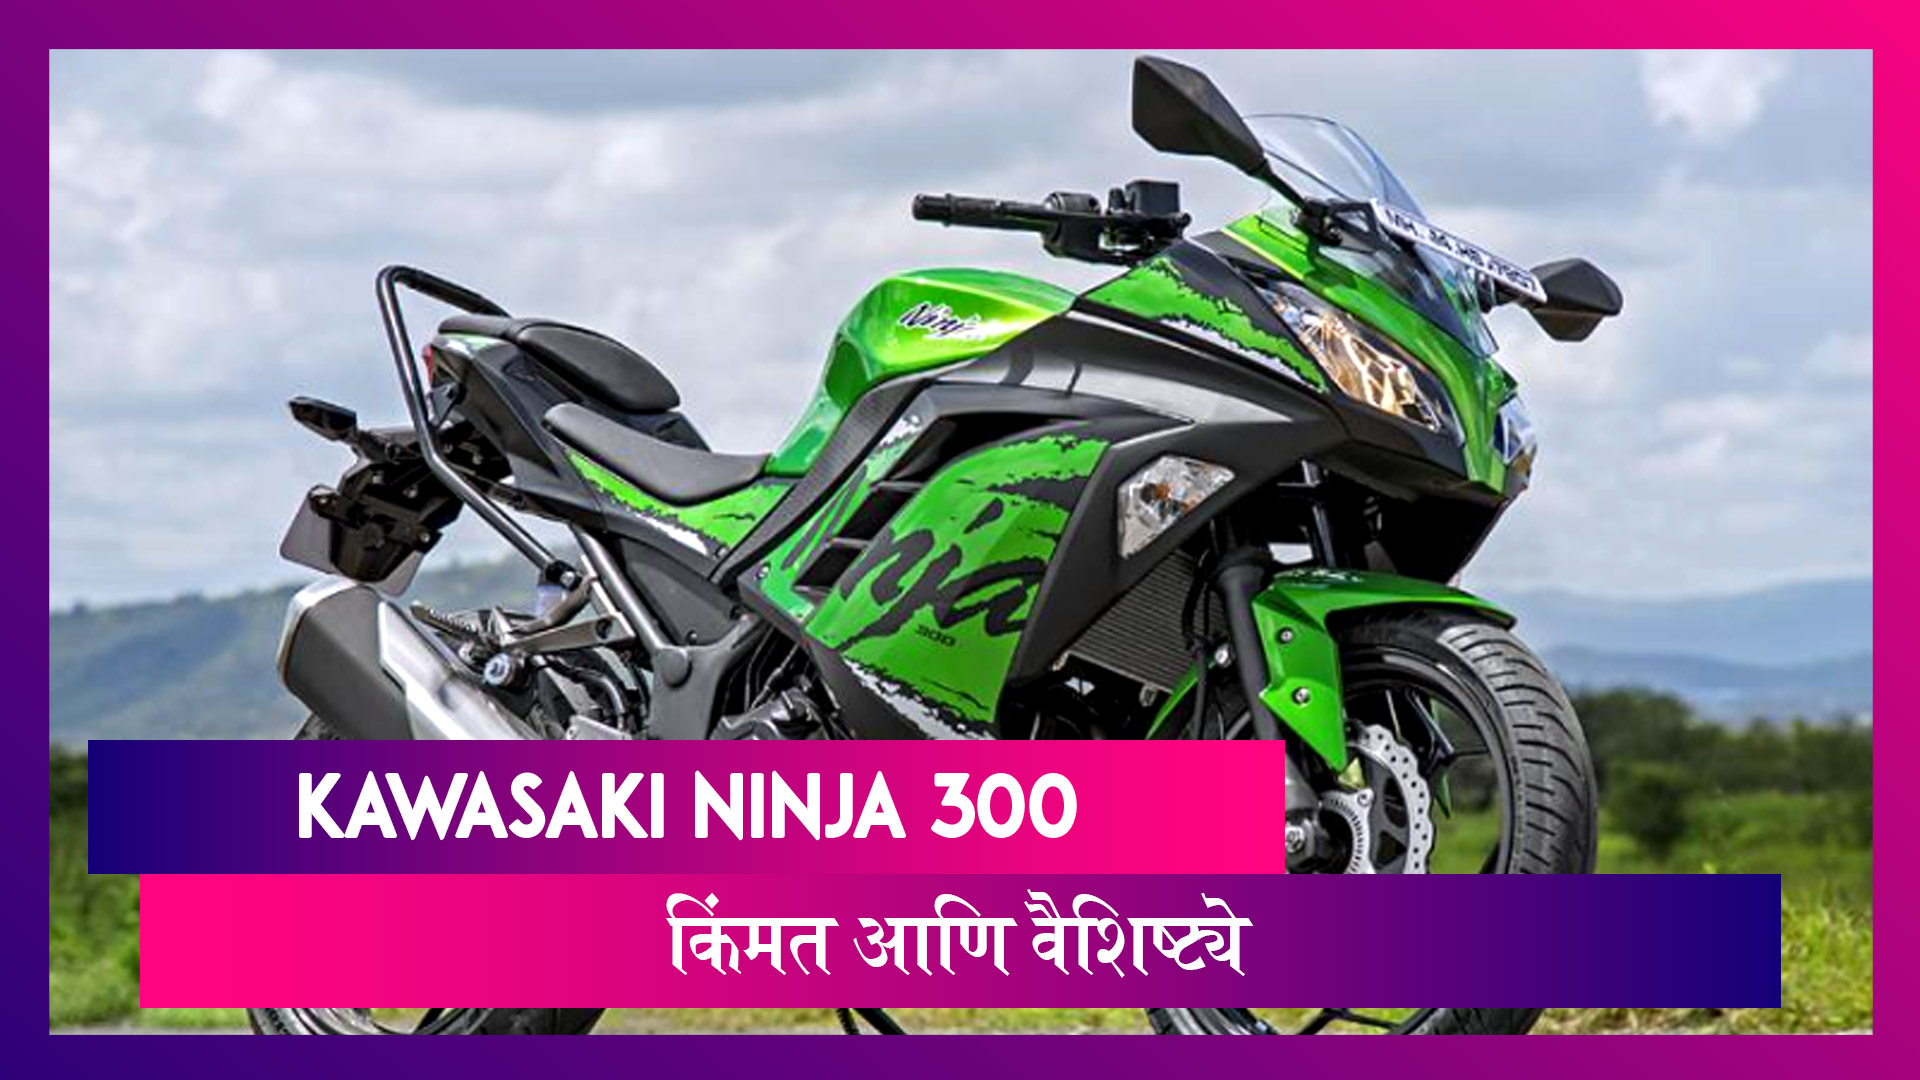 Kawasaki ने भारतात आपली आपडेटेड Ninja 300 स्पोर्ट्स बाइक लॉन्च केली आहे